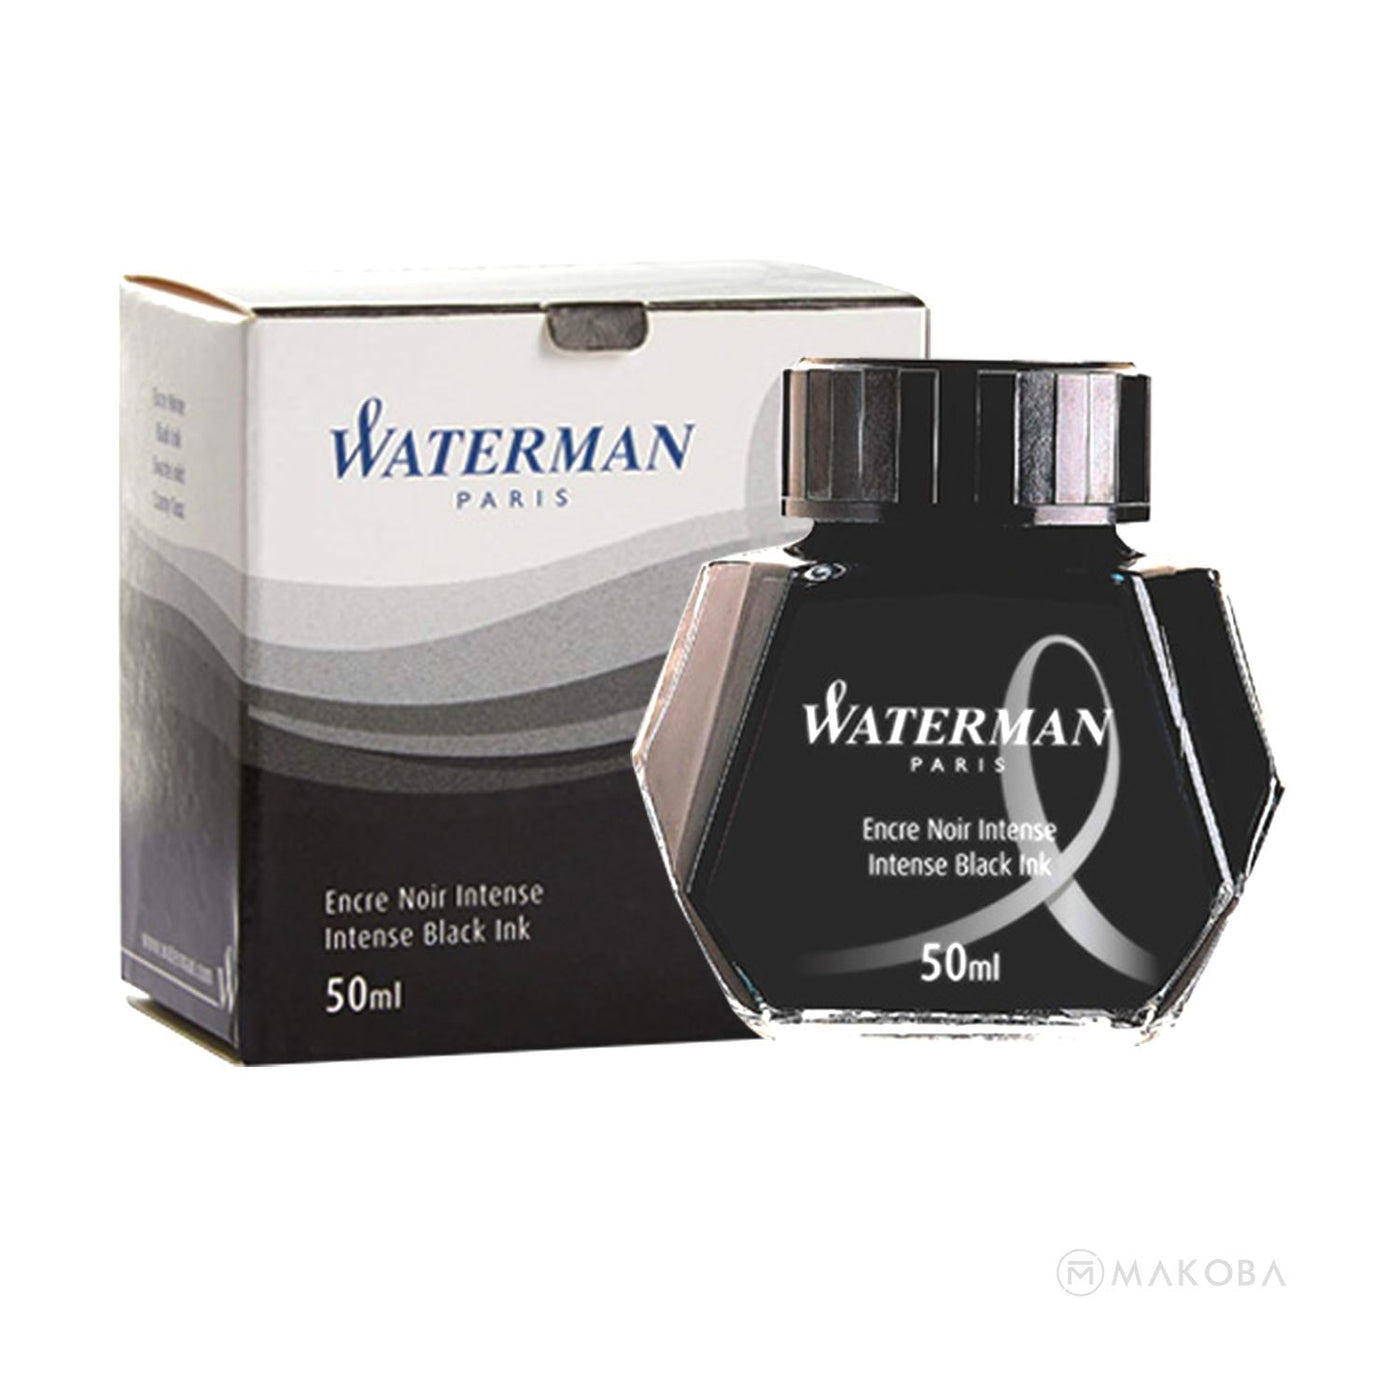 Waterman Intense Black Ink Bottle - 50ml 2